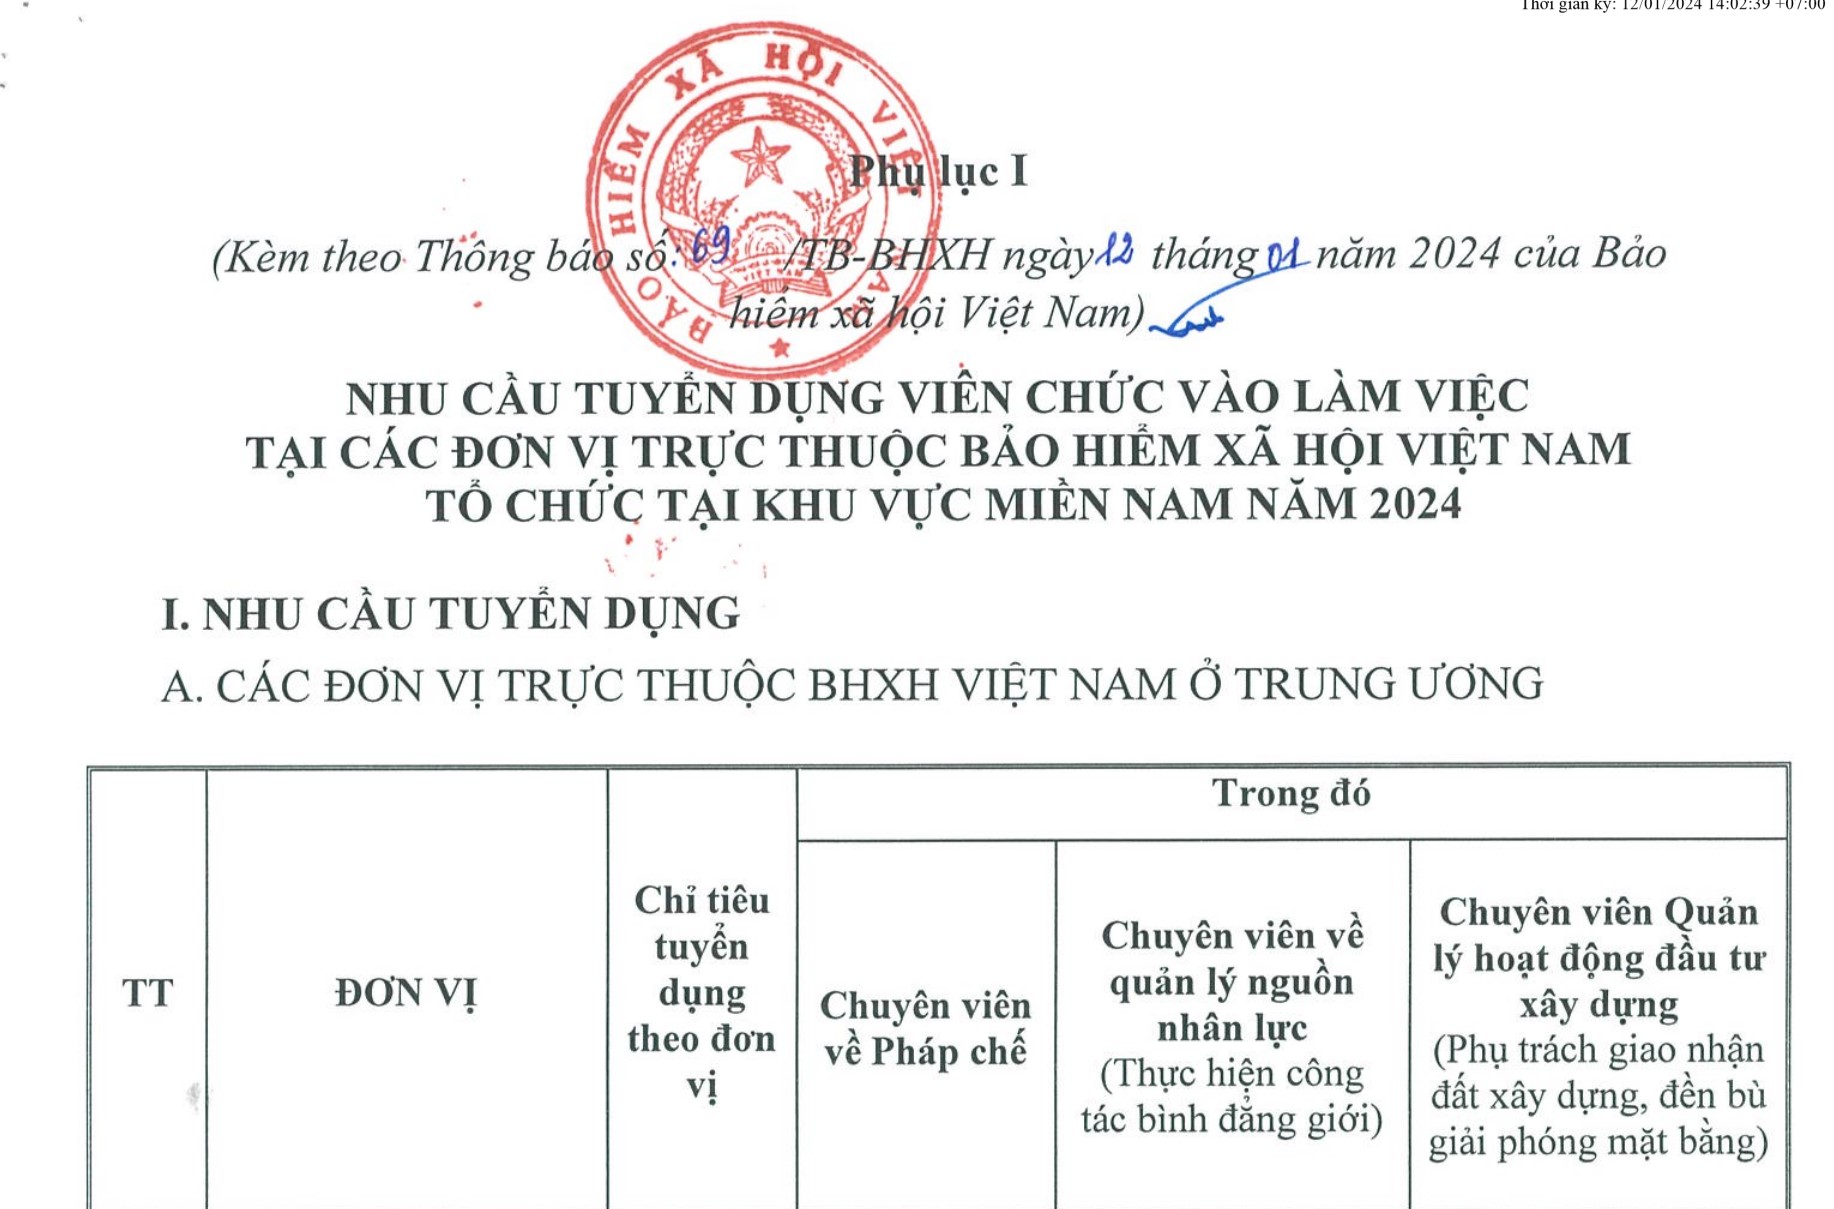 Bảo hiểm xã hội Việt Nam tuyển dụng viên chức năm 2024